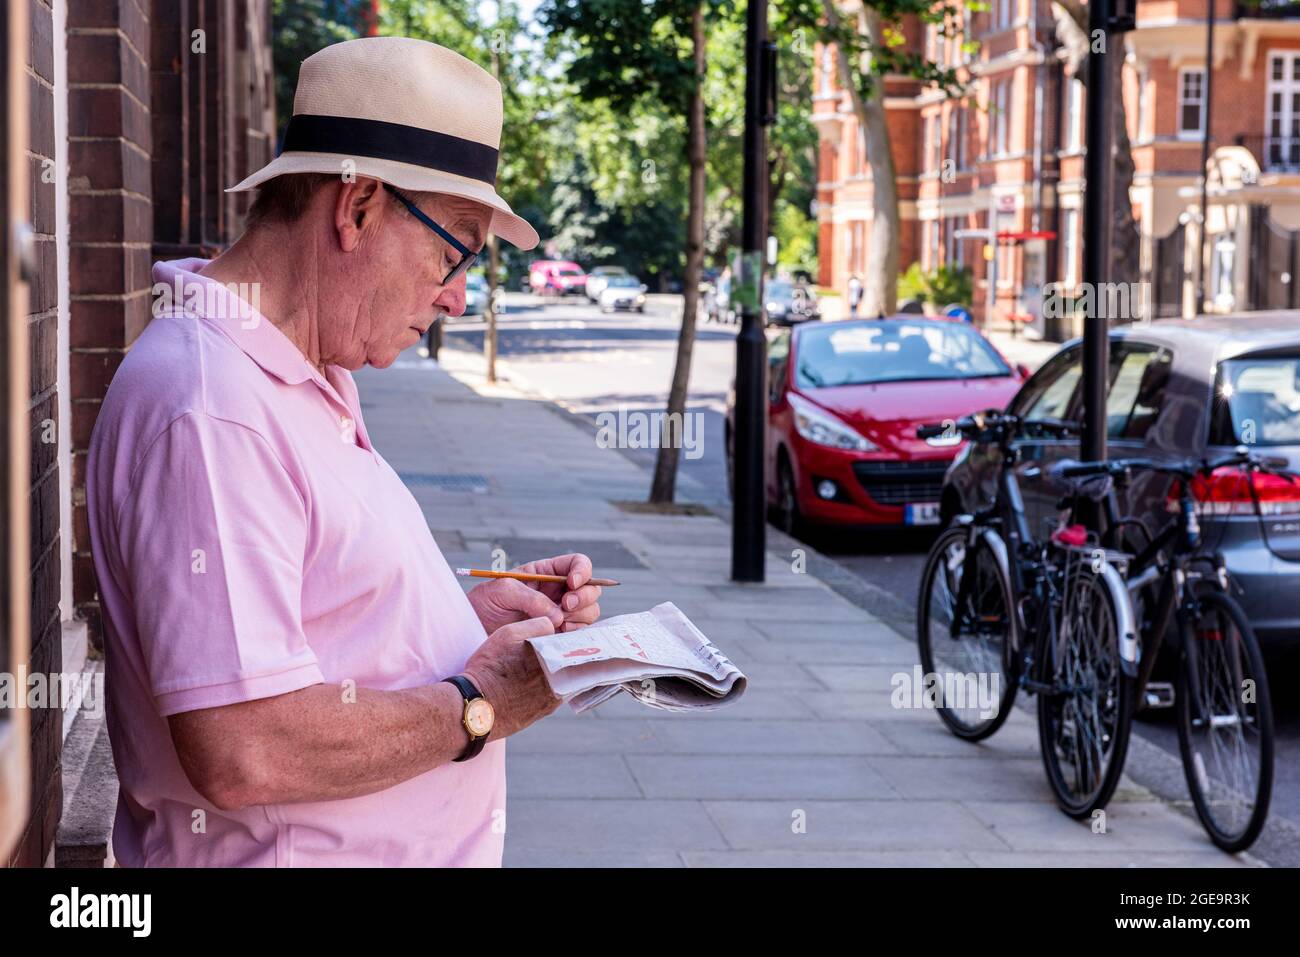 Un hombre que lleva una camiseta rosa y un sombrero de Panamá hace el crucigrama apoyado contra una pared fuera del Chelsea Physic Garden en el centro de Londres. Foto de stock